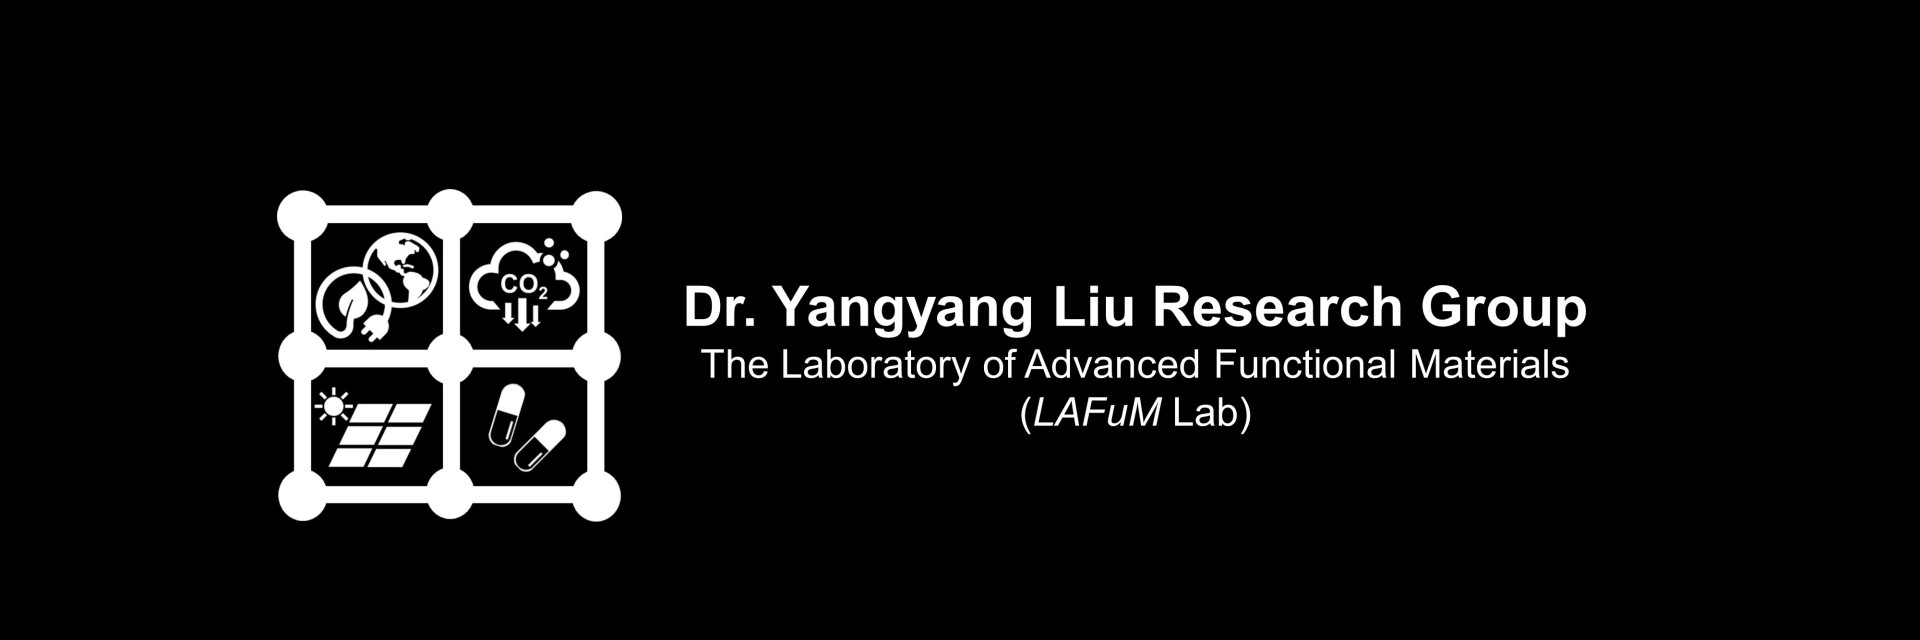 Liu group logo and Name